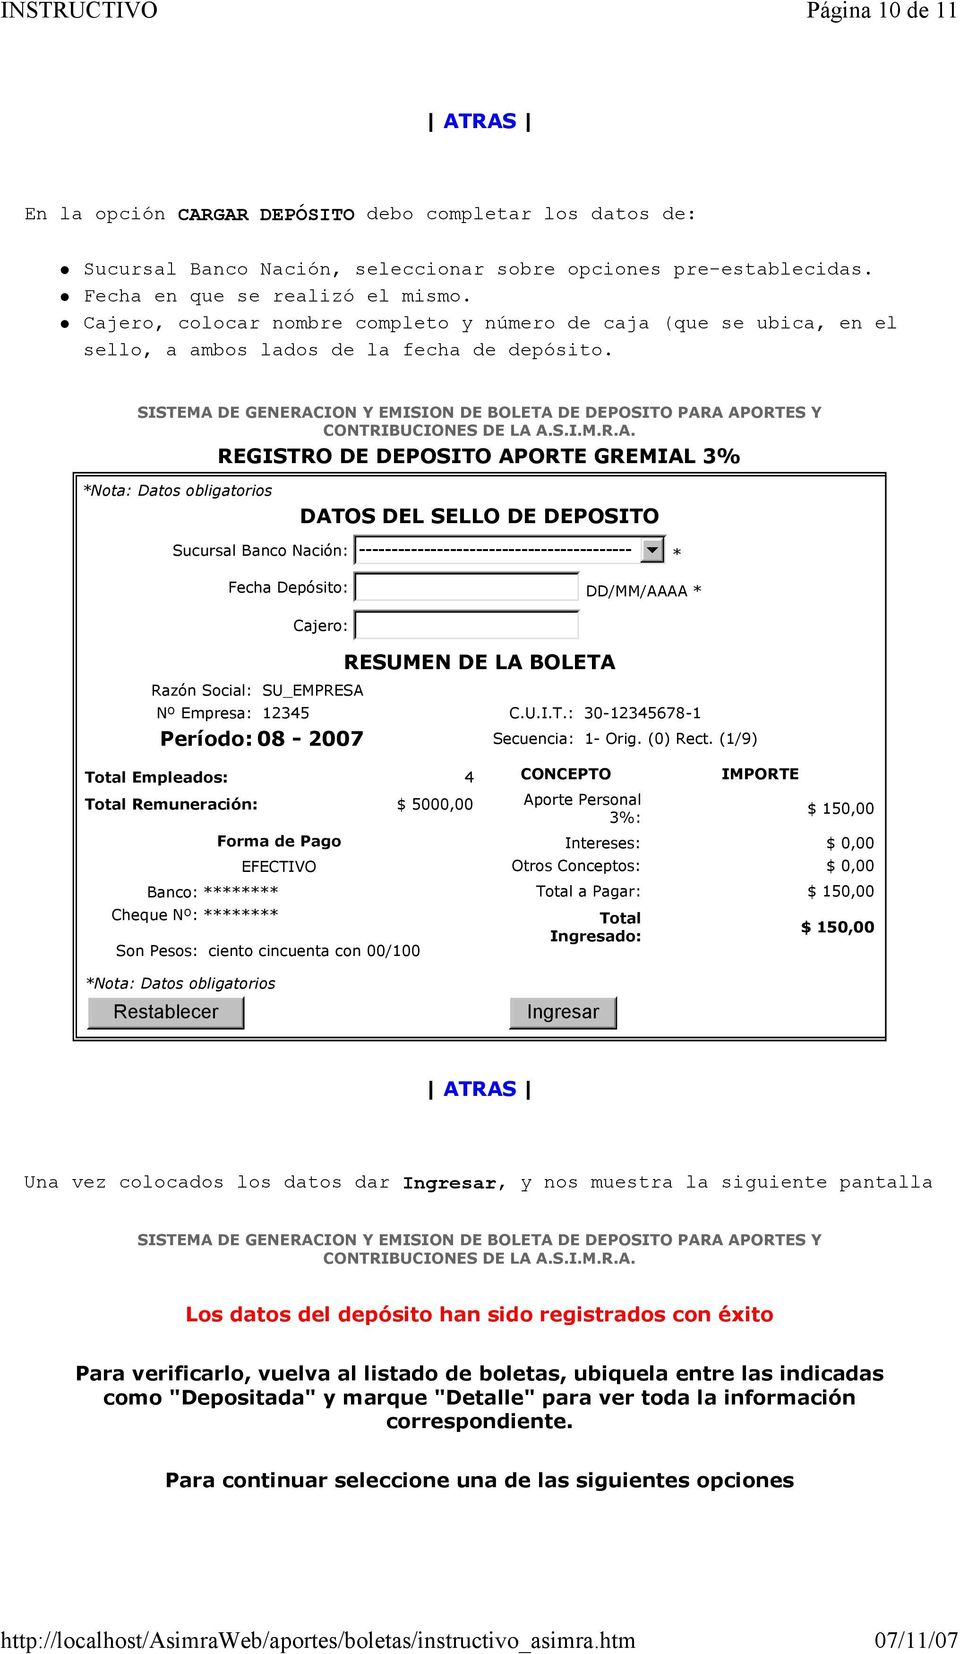 REGISTRO DE DEPOSITO APORTE GREMIAL 3% Nota: Datos obligatorios DATOS DEL SELLO DE DEPOSITO Sucursal Banco Nación: ------------------------------------------ Fecha Depósito: DD/MM/AAAA Cajero: Razón